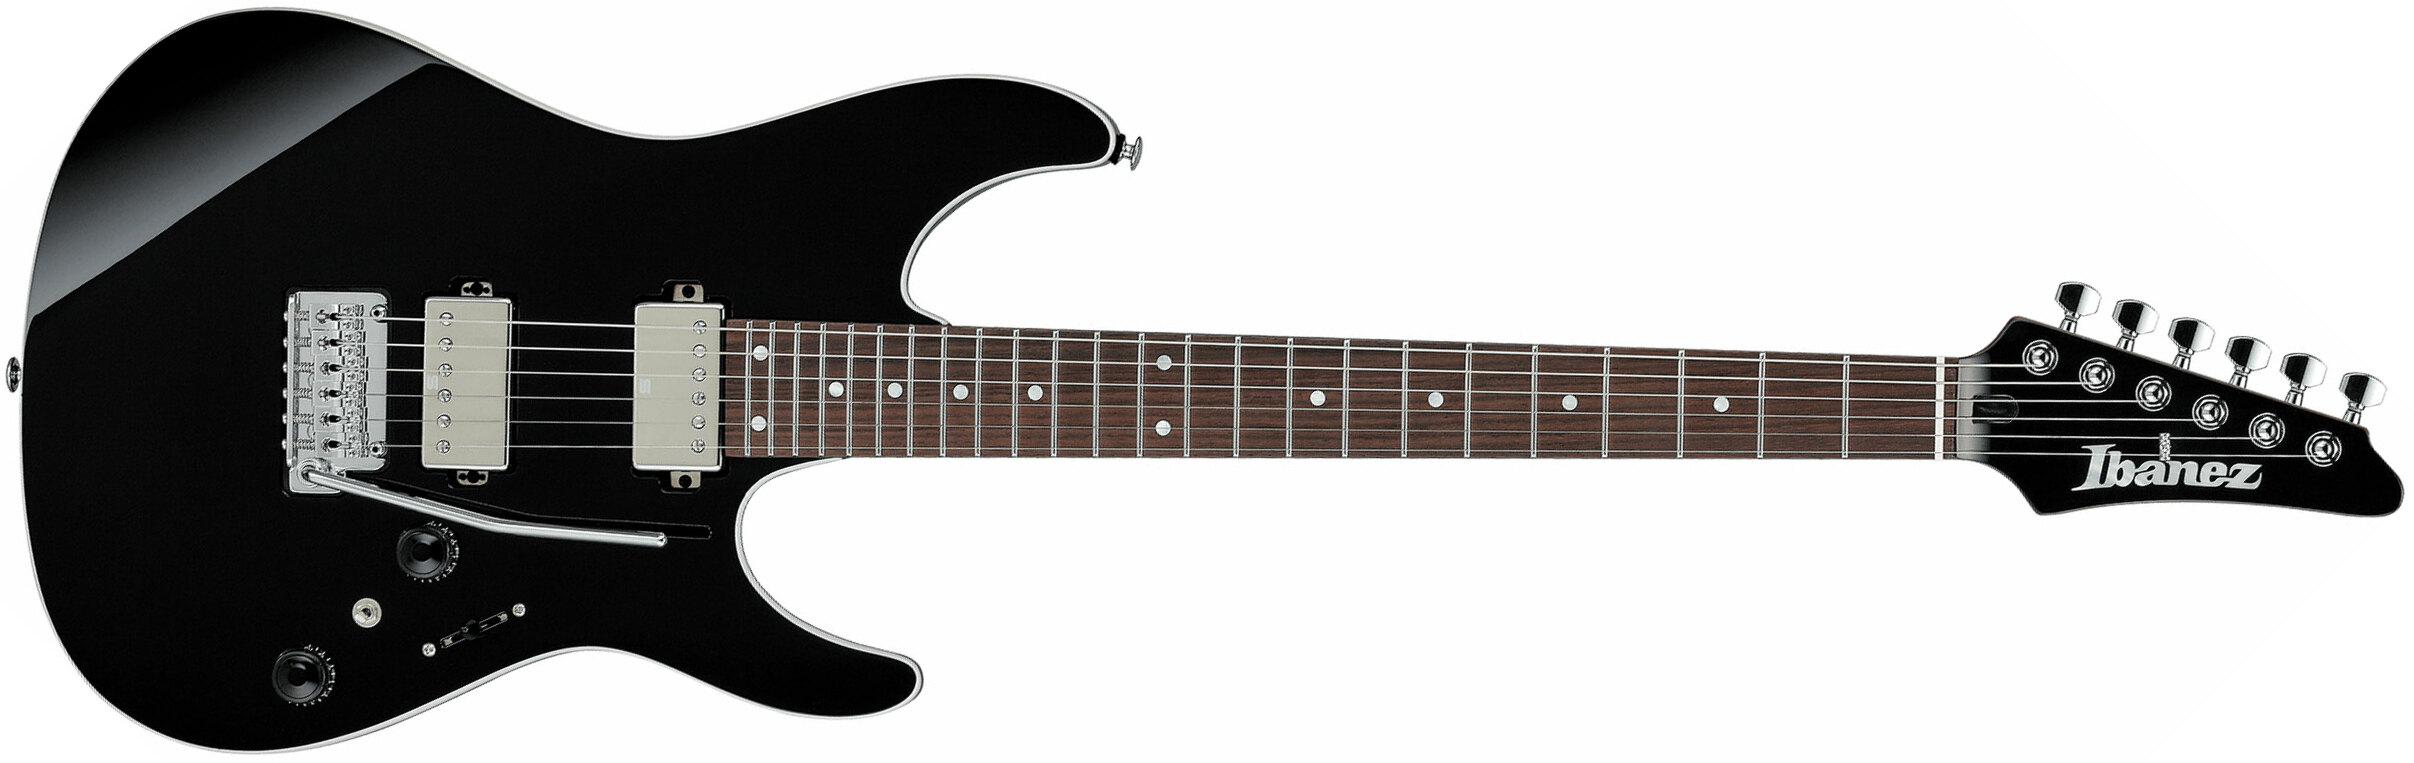 Ibanez Az42p1 Bk  Premium 2h Seymour Duncan Trem Rw - Black - Str shape electric guitar - Main picture